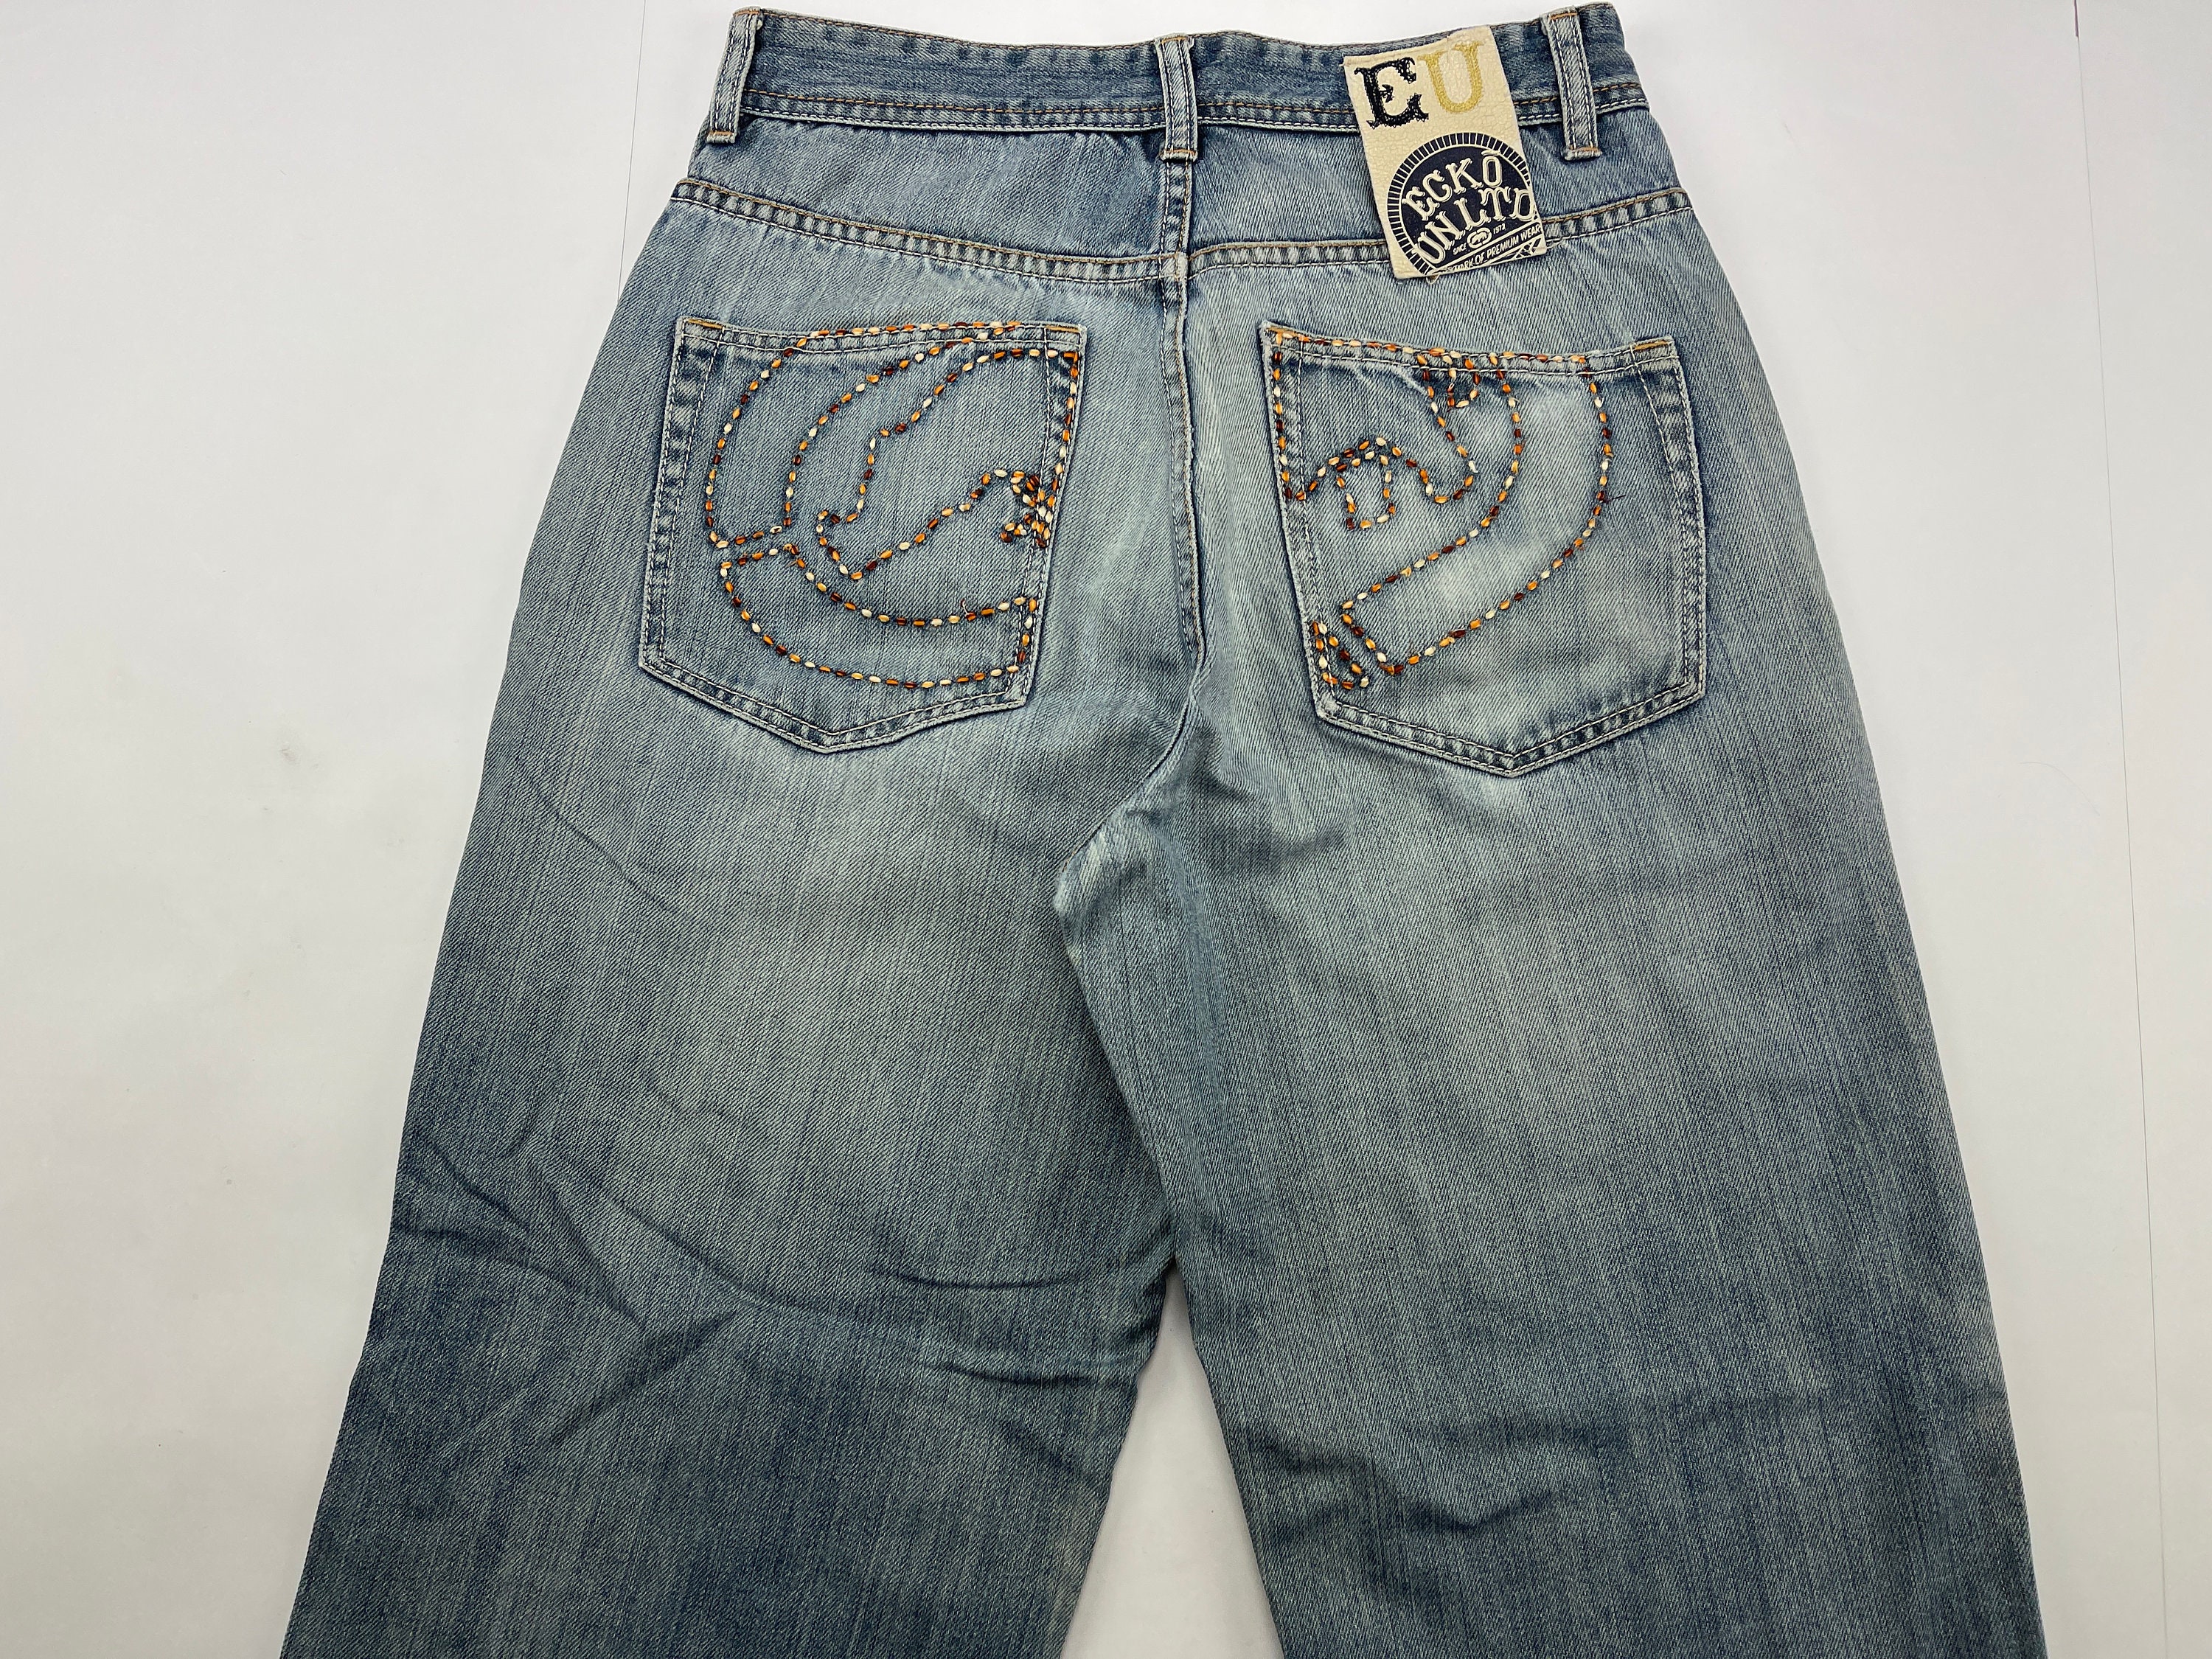 Ecko Unltd jeans blue vintage baggy pants 90s hip hop | Etsy